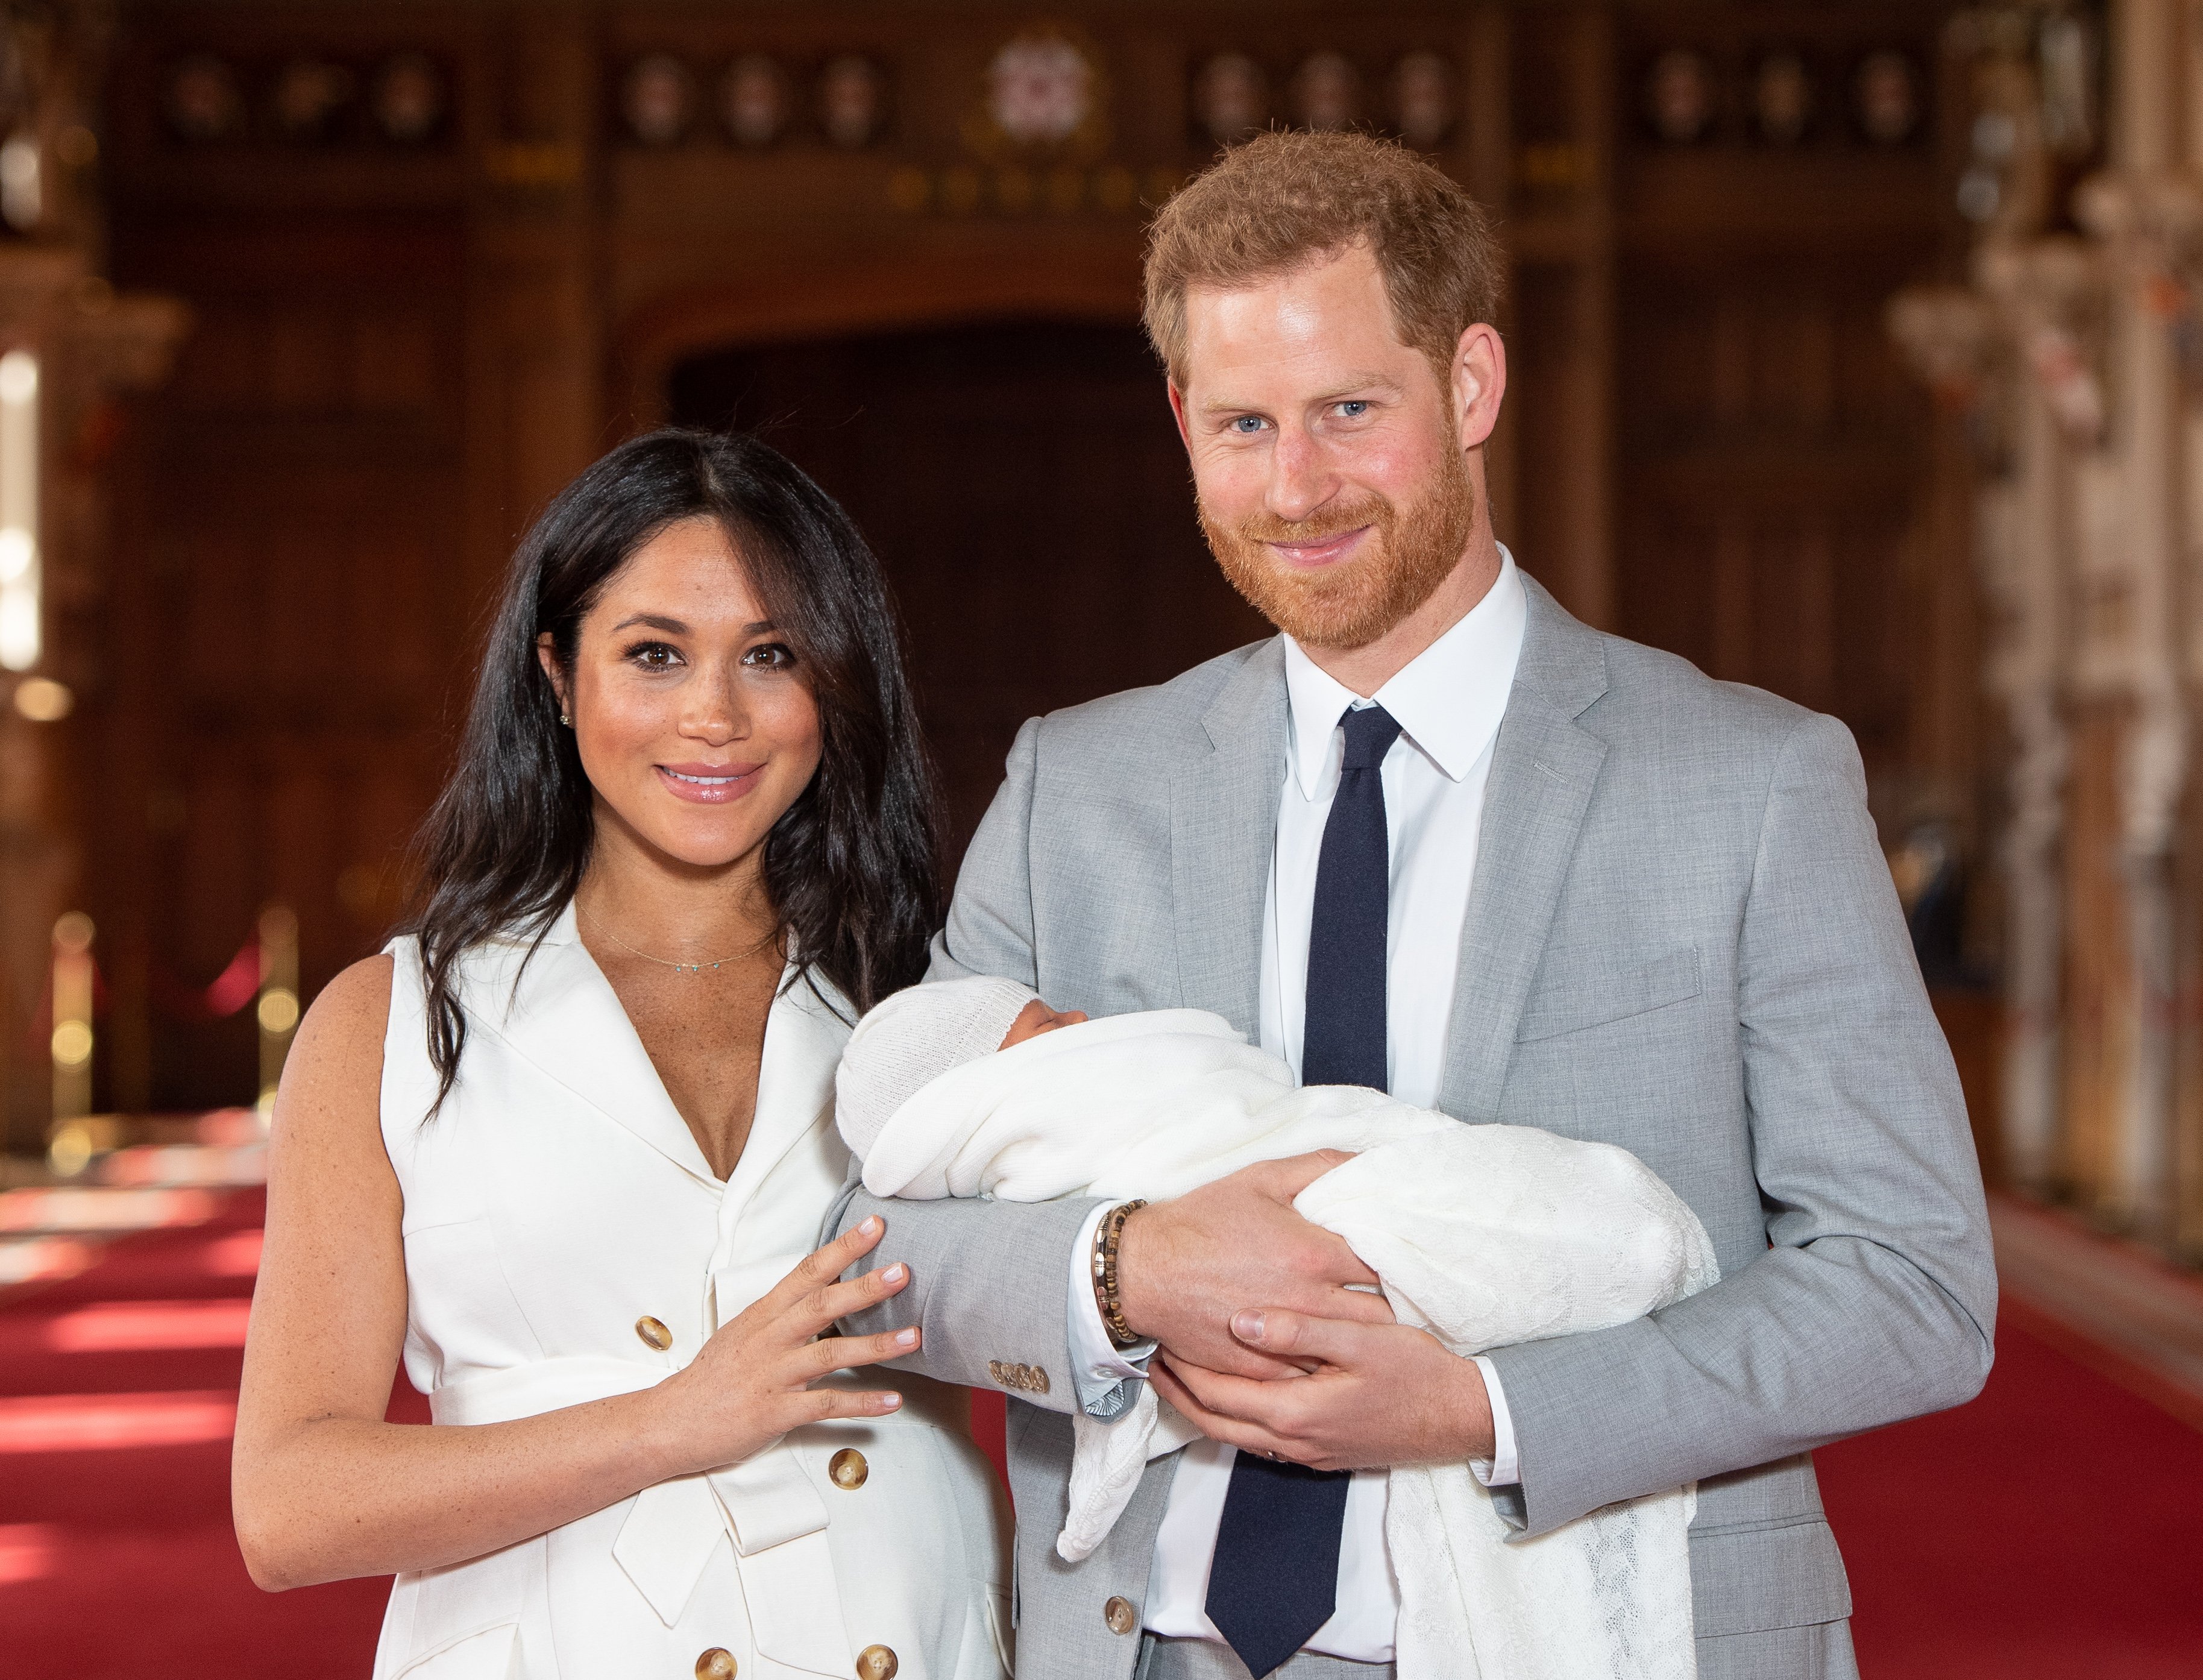 Prinz Harry, Herzog von Sussex, und Meghan, Herzogin von Sussex, posieren mit ihrem neugeborenen Sohn Archie Harrison Mountbatten-Windsor während eines Fototermins in der St. George's Hall auf Schloss Windsor am 8. Mai 2019 in Windsor, England. | Quelle: Getty Images